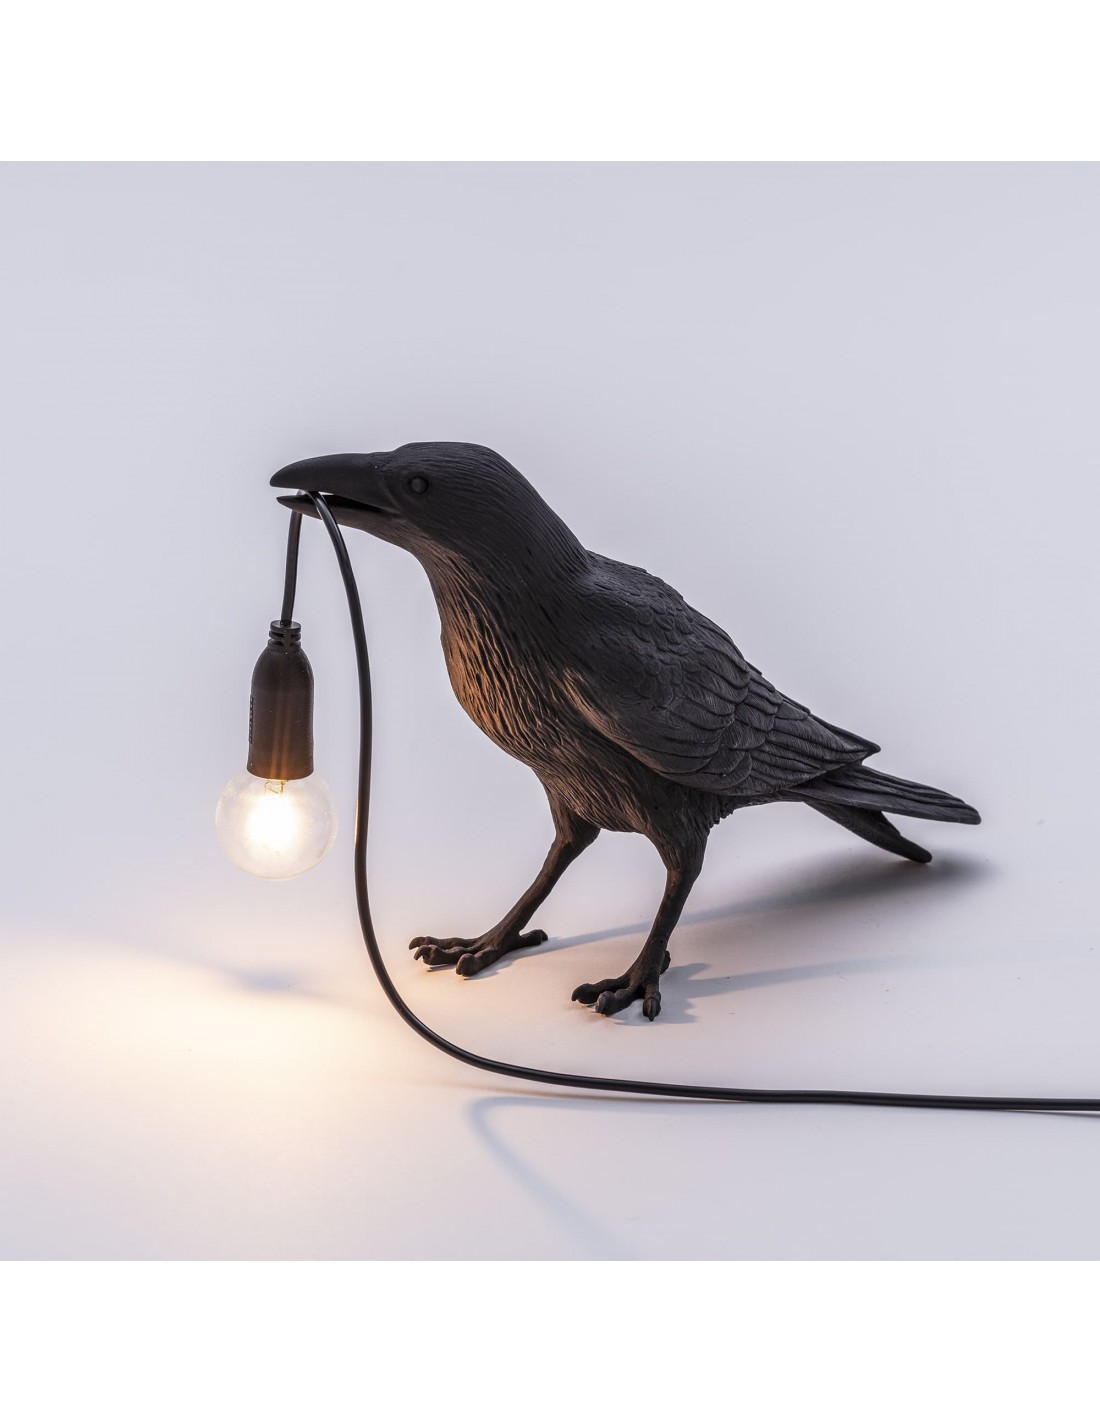 Seletti Vogel Lamp kopen? en betrouwbaar